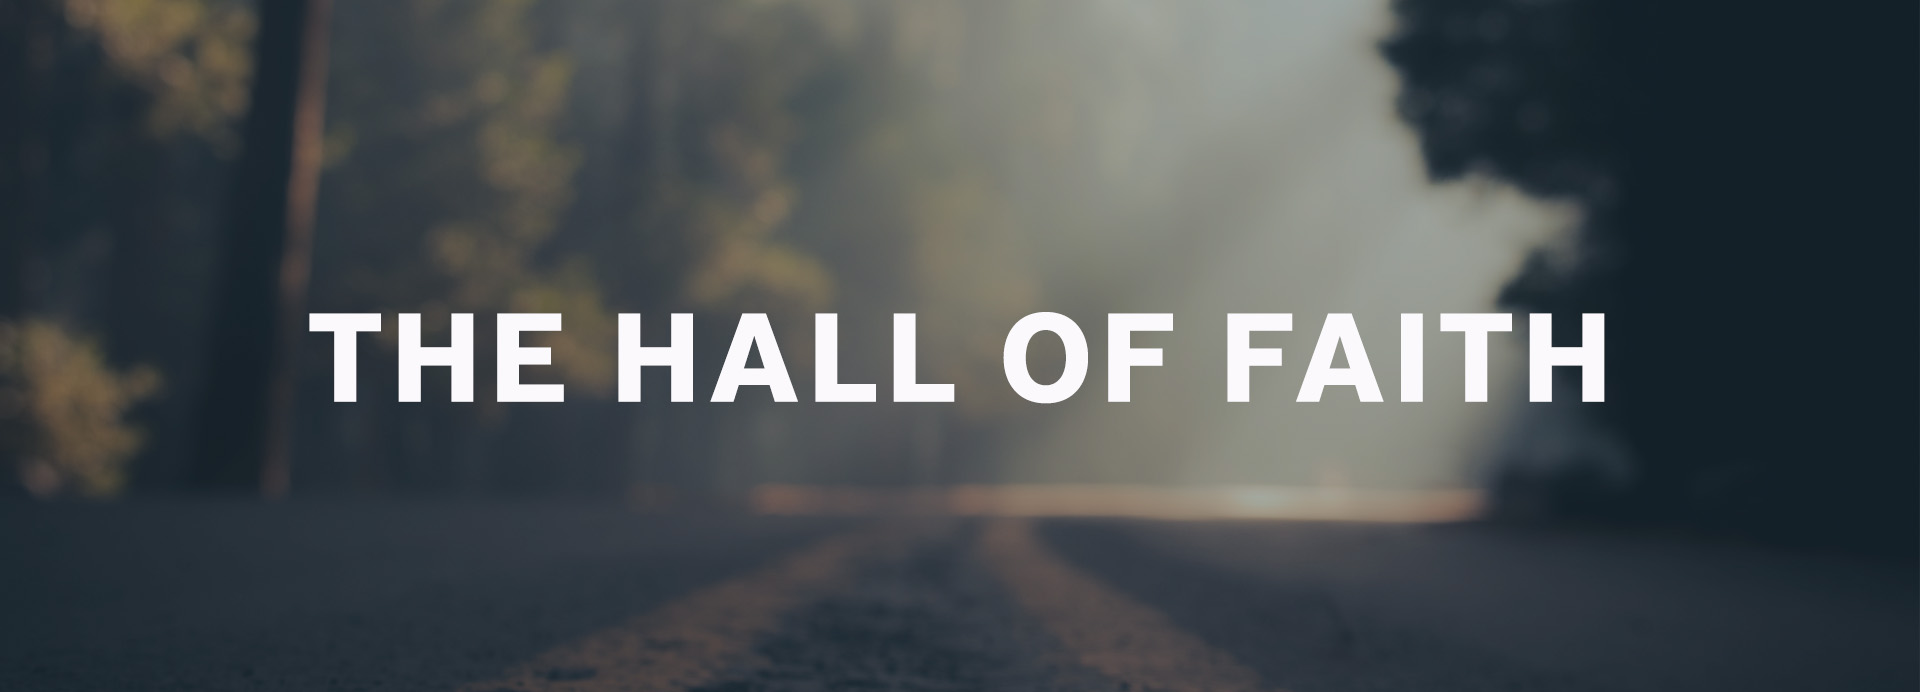 The Hall of Faith